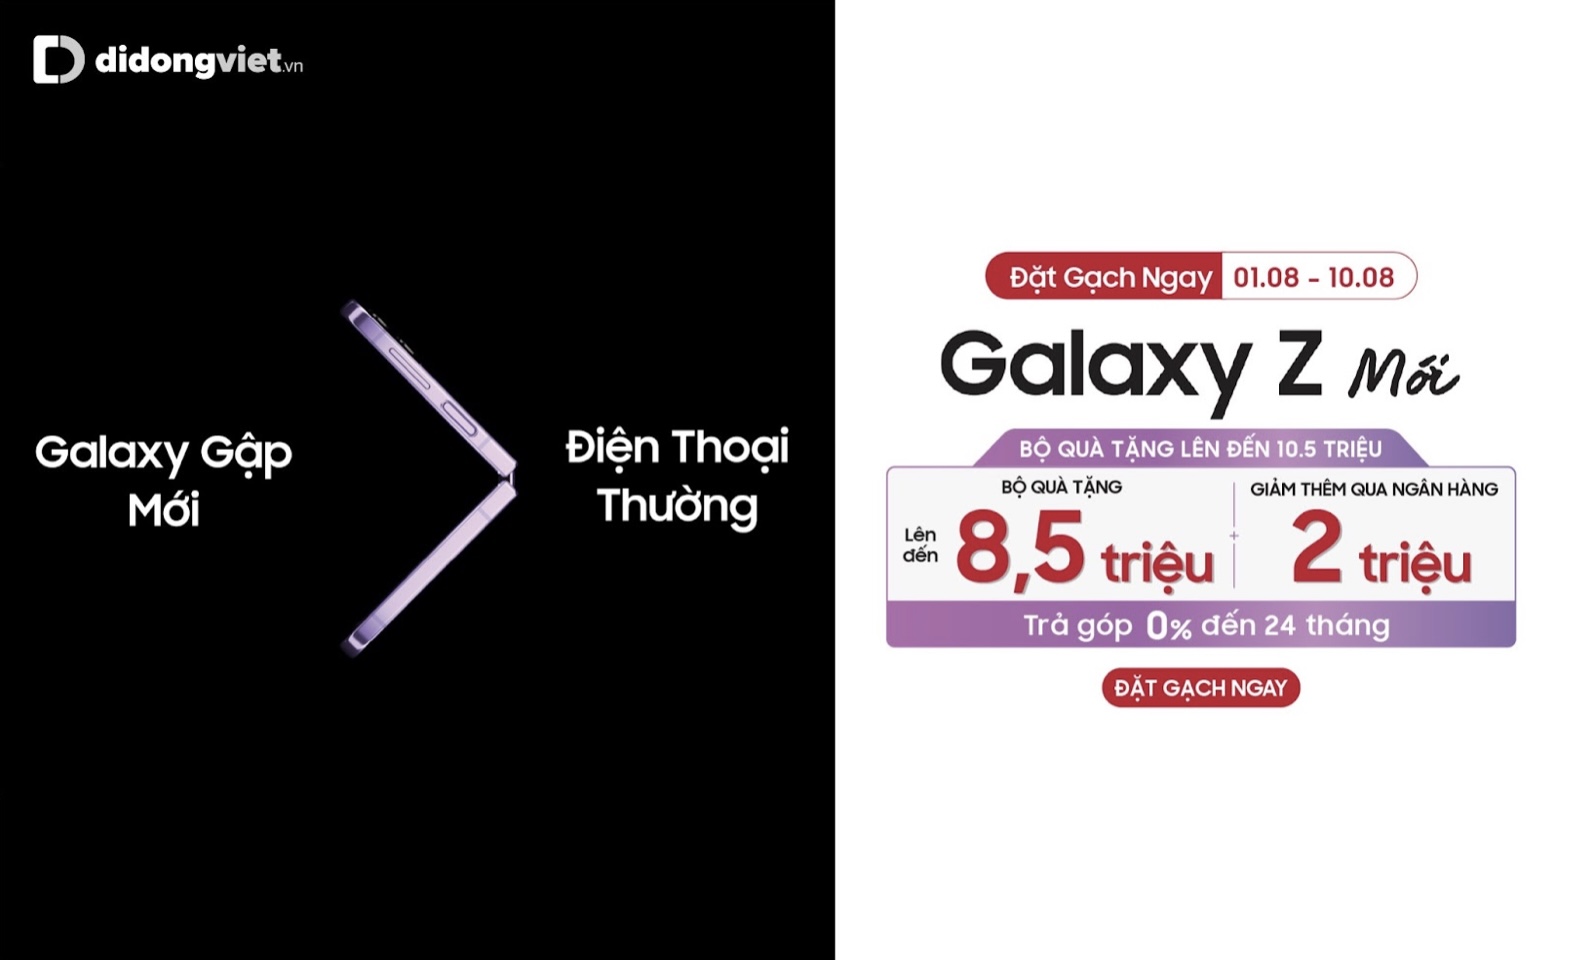 Samsung galaxy z mới gây ấn tượng với dấu > và bộ quà hấp dẫn khi đặt gạch.